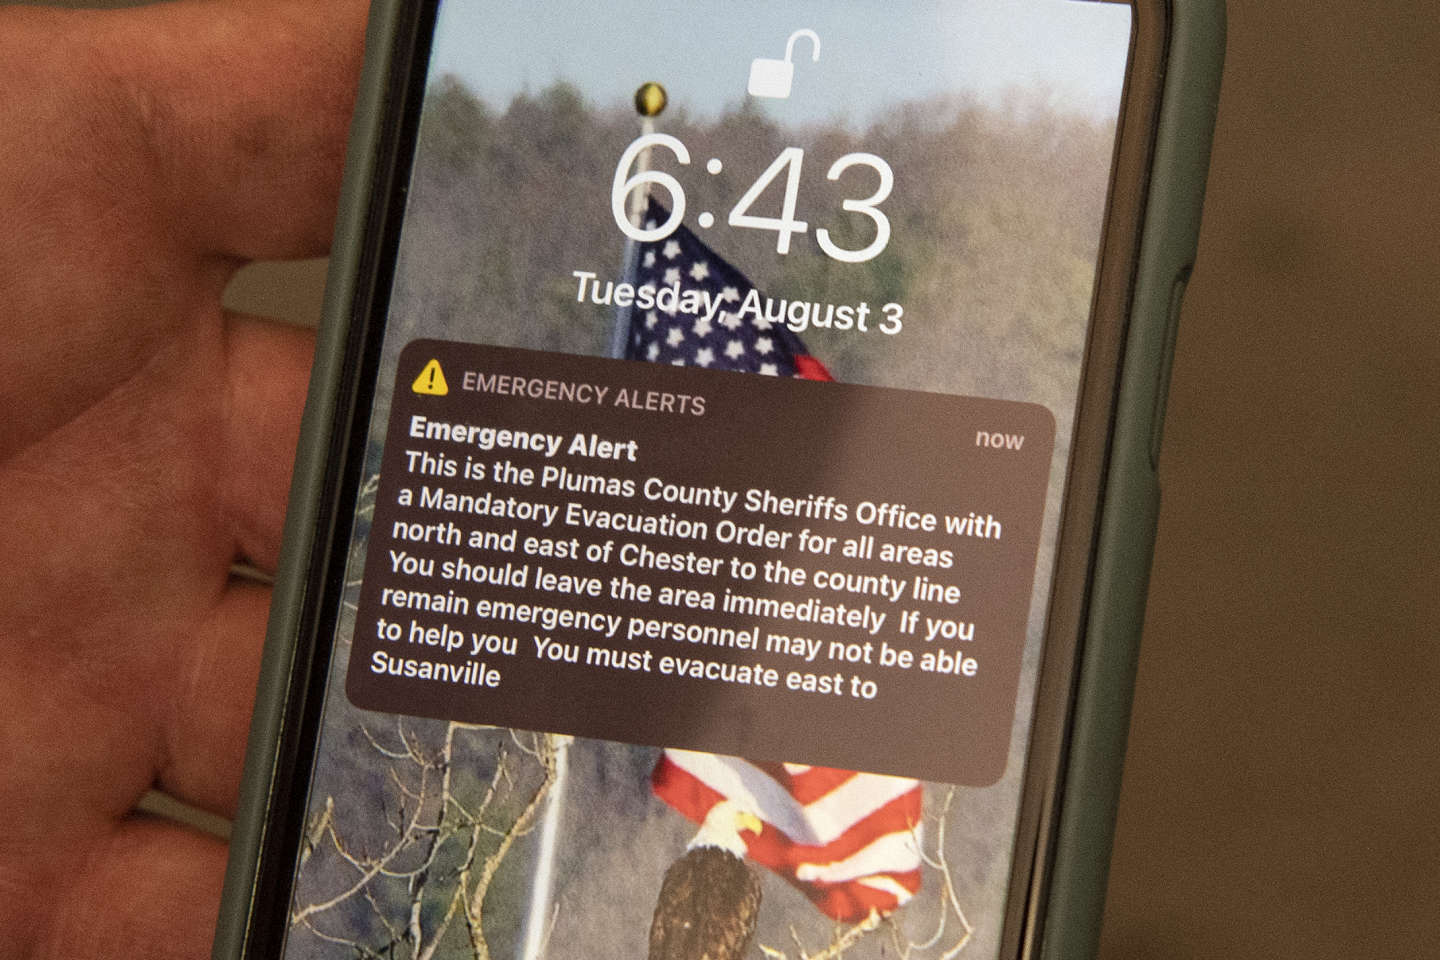 Météo, attaque terroriste ou accident industriel… Le téléphone mobile devient un outil d’alerte